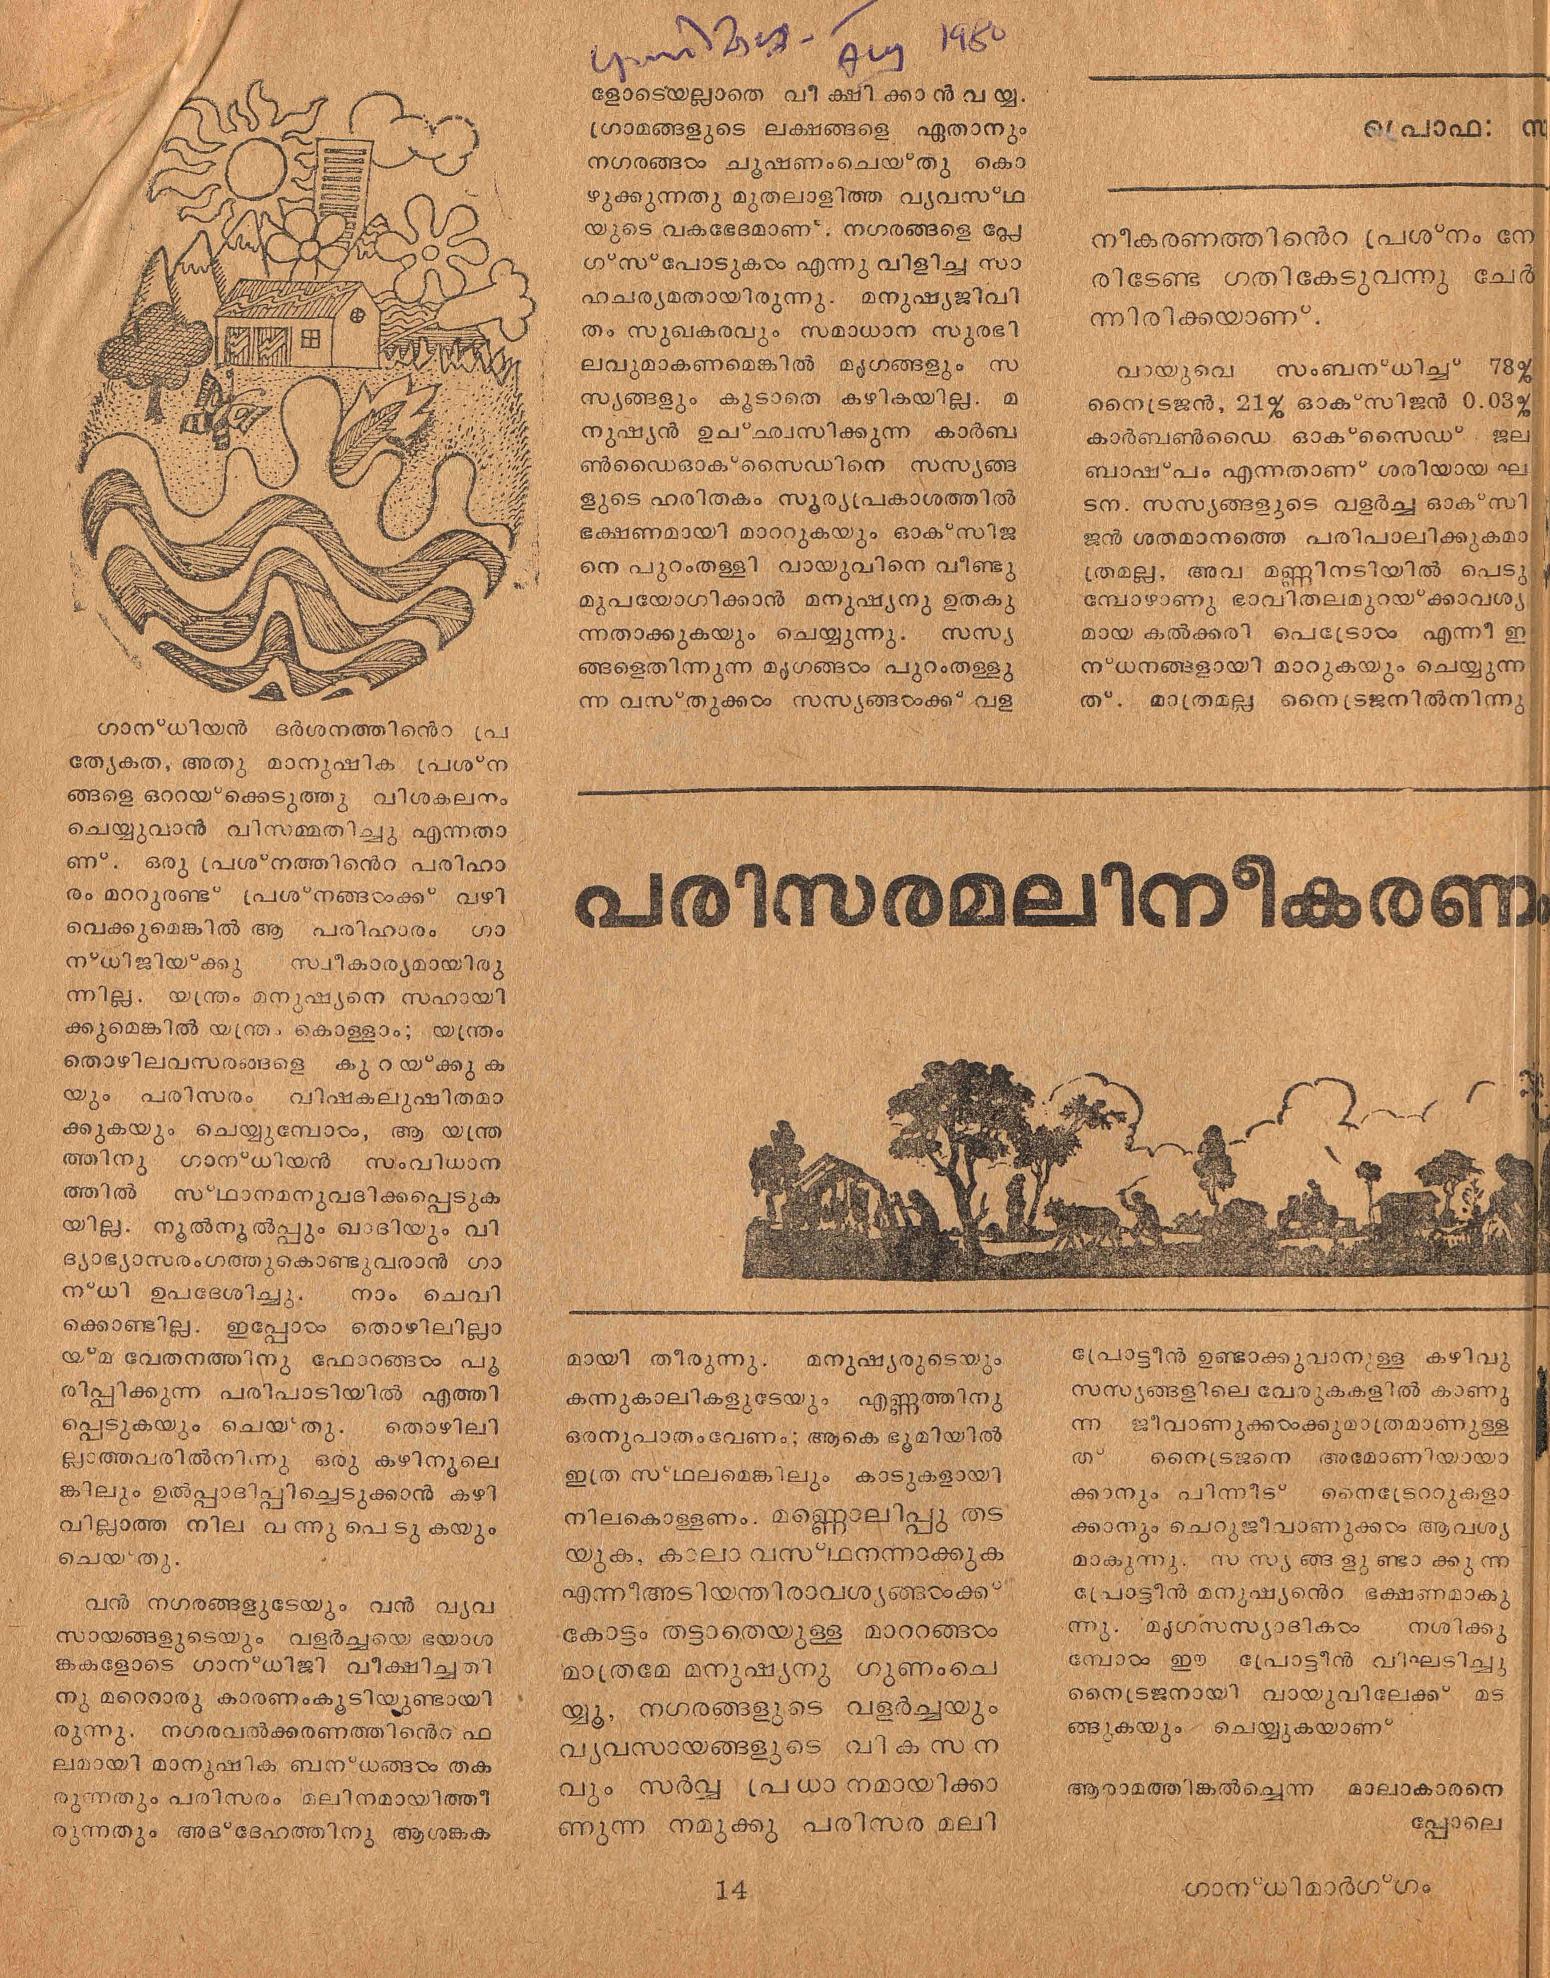 1980 - പരിസരമലിനീകരണം: ഗാന്ധിയൻവീക്ഷണം - സി.കെ. മൂസ്സത്